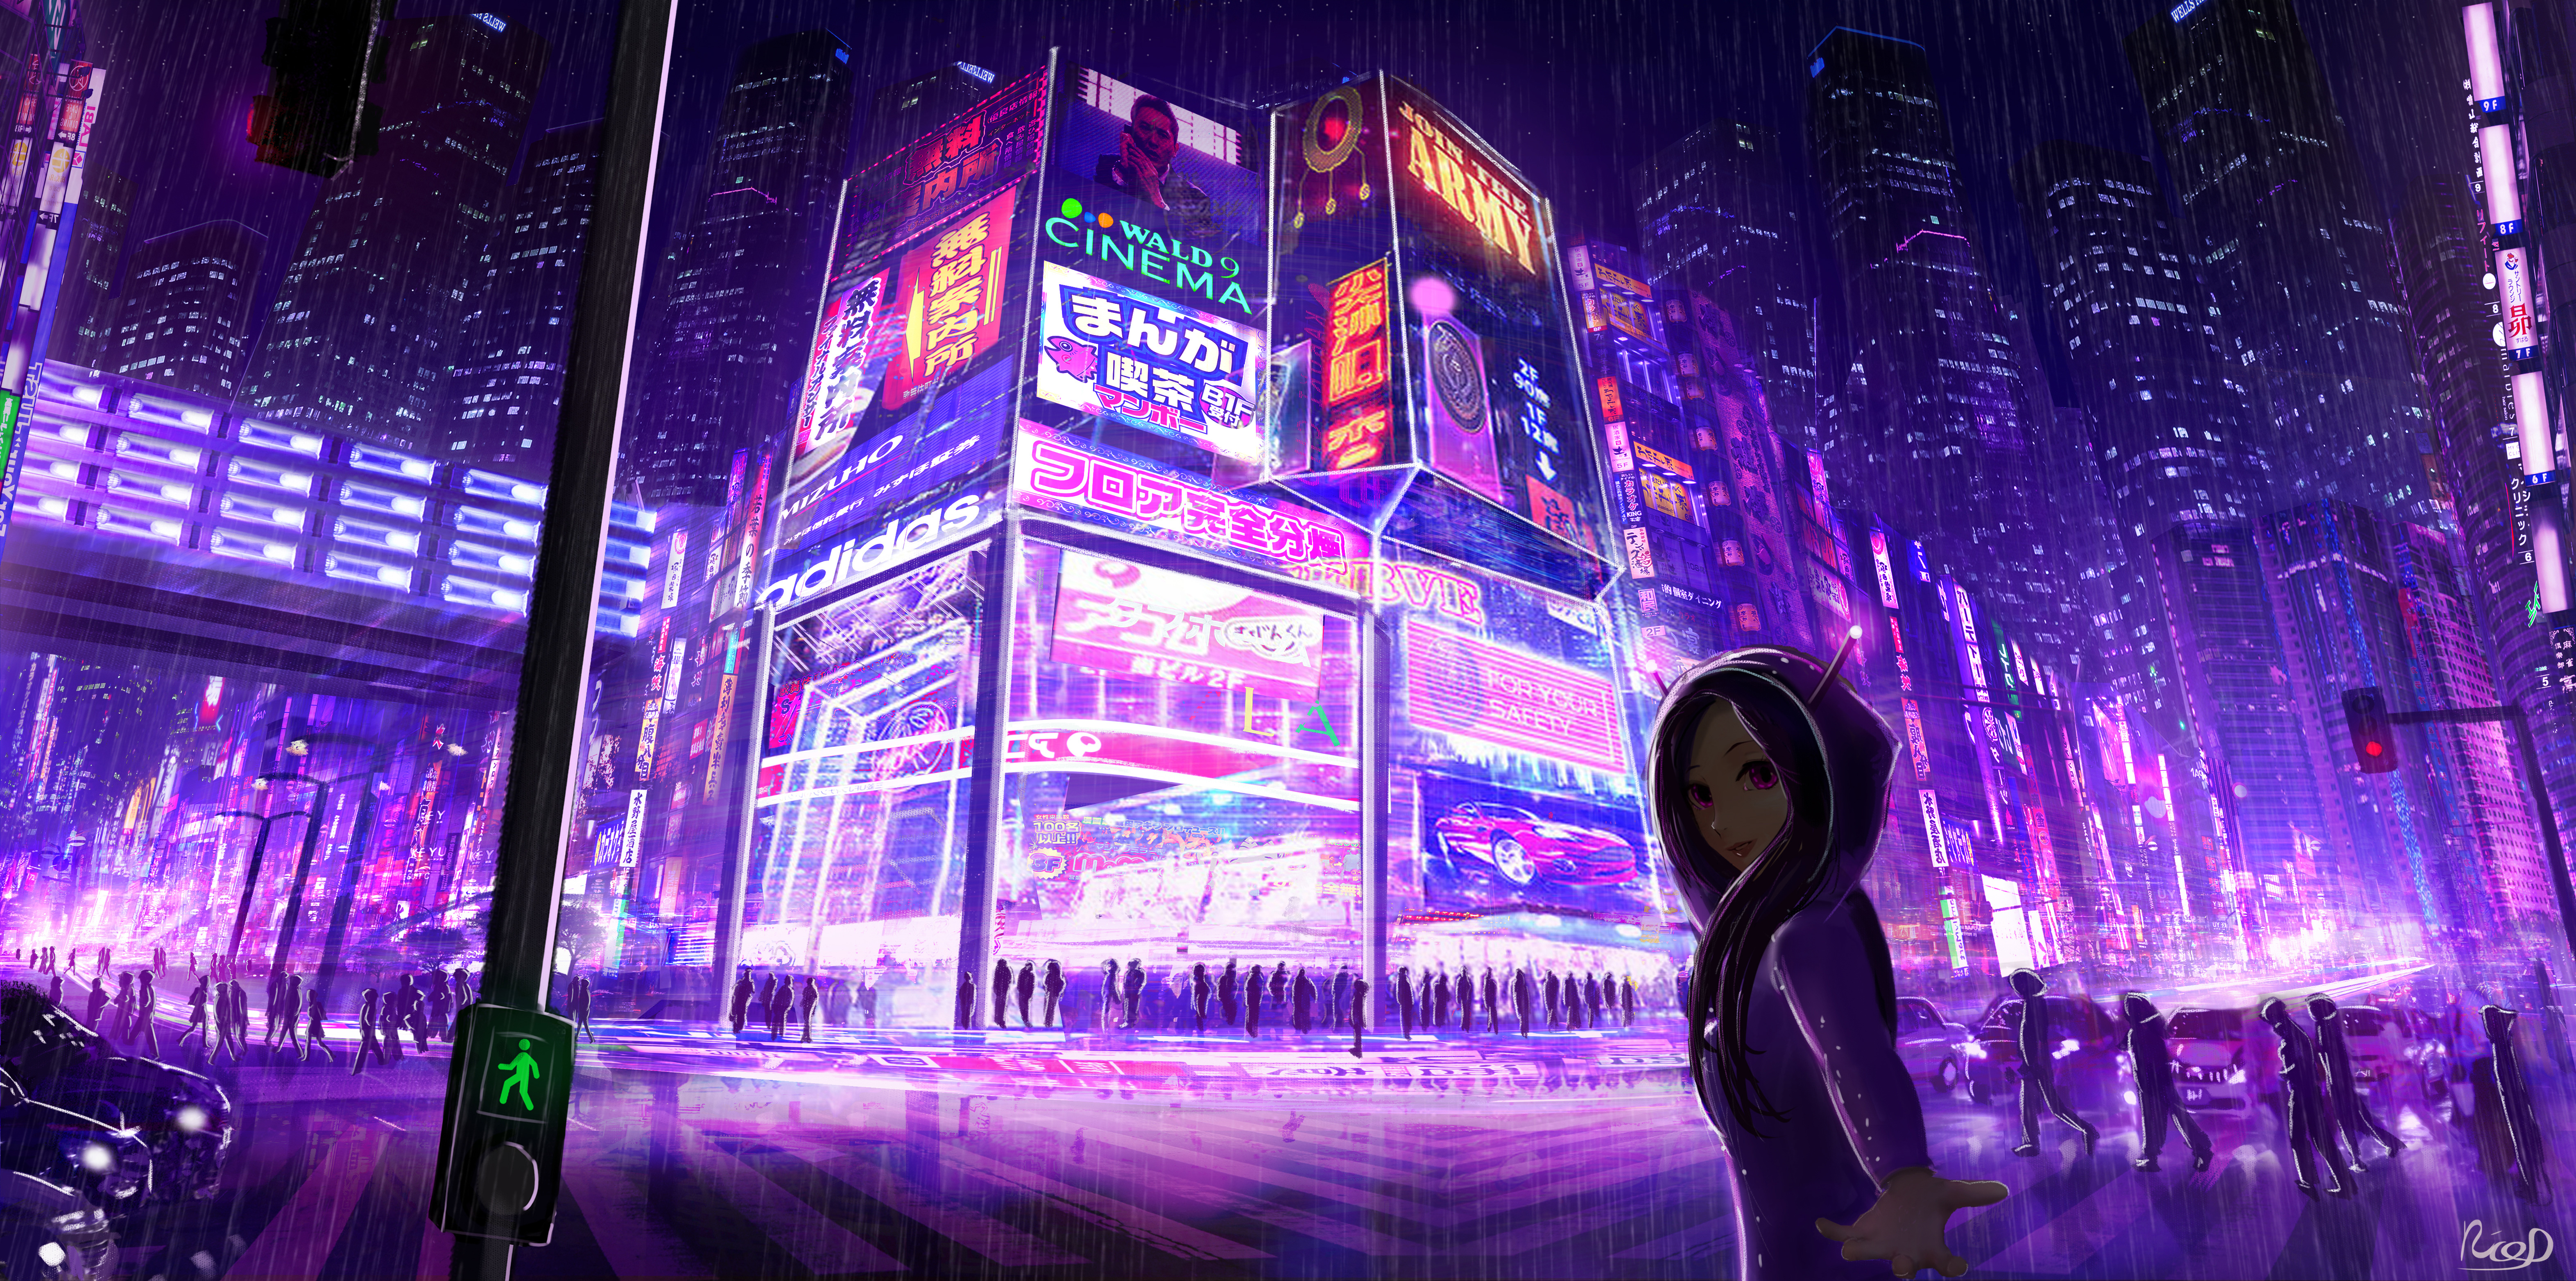 Cyberpunk Cityscape Girl Digital Art, HD Artist, 4k Wallpapers, Images